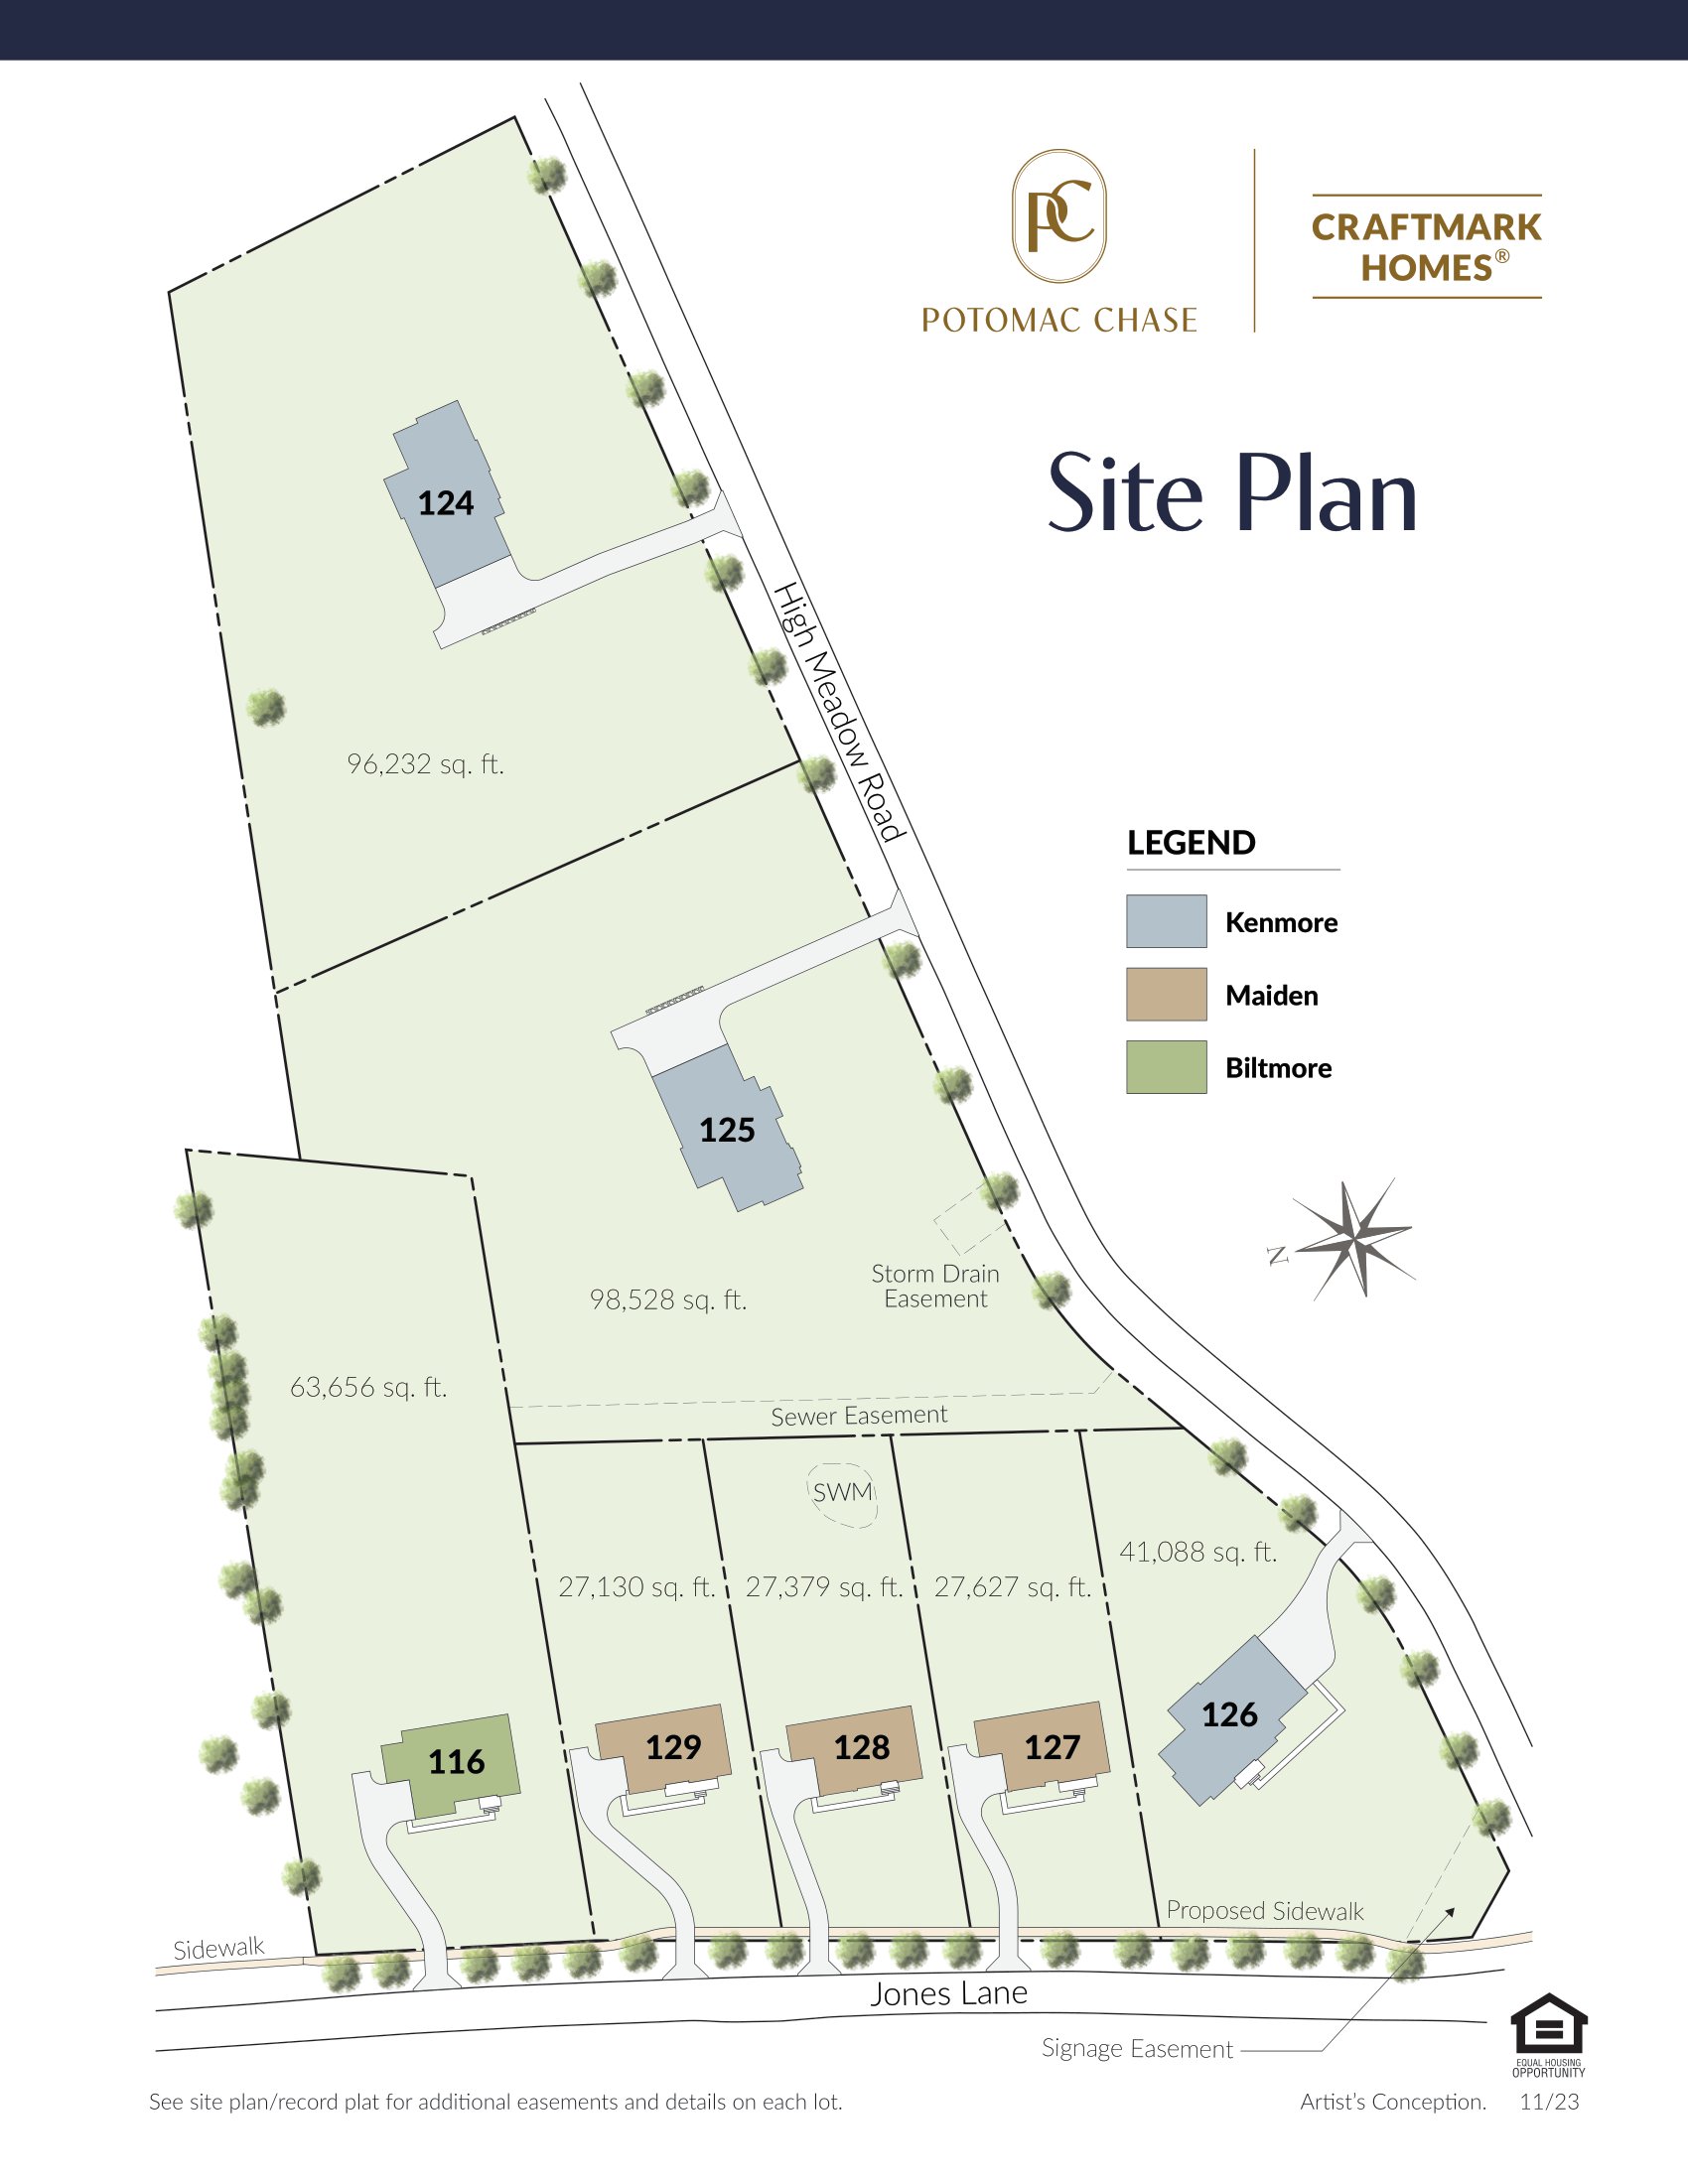 Potomac Chase Site Plan, Craftmark Homes